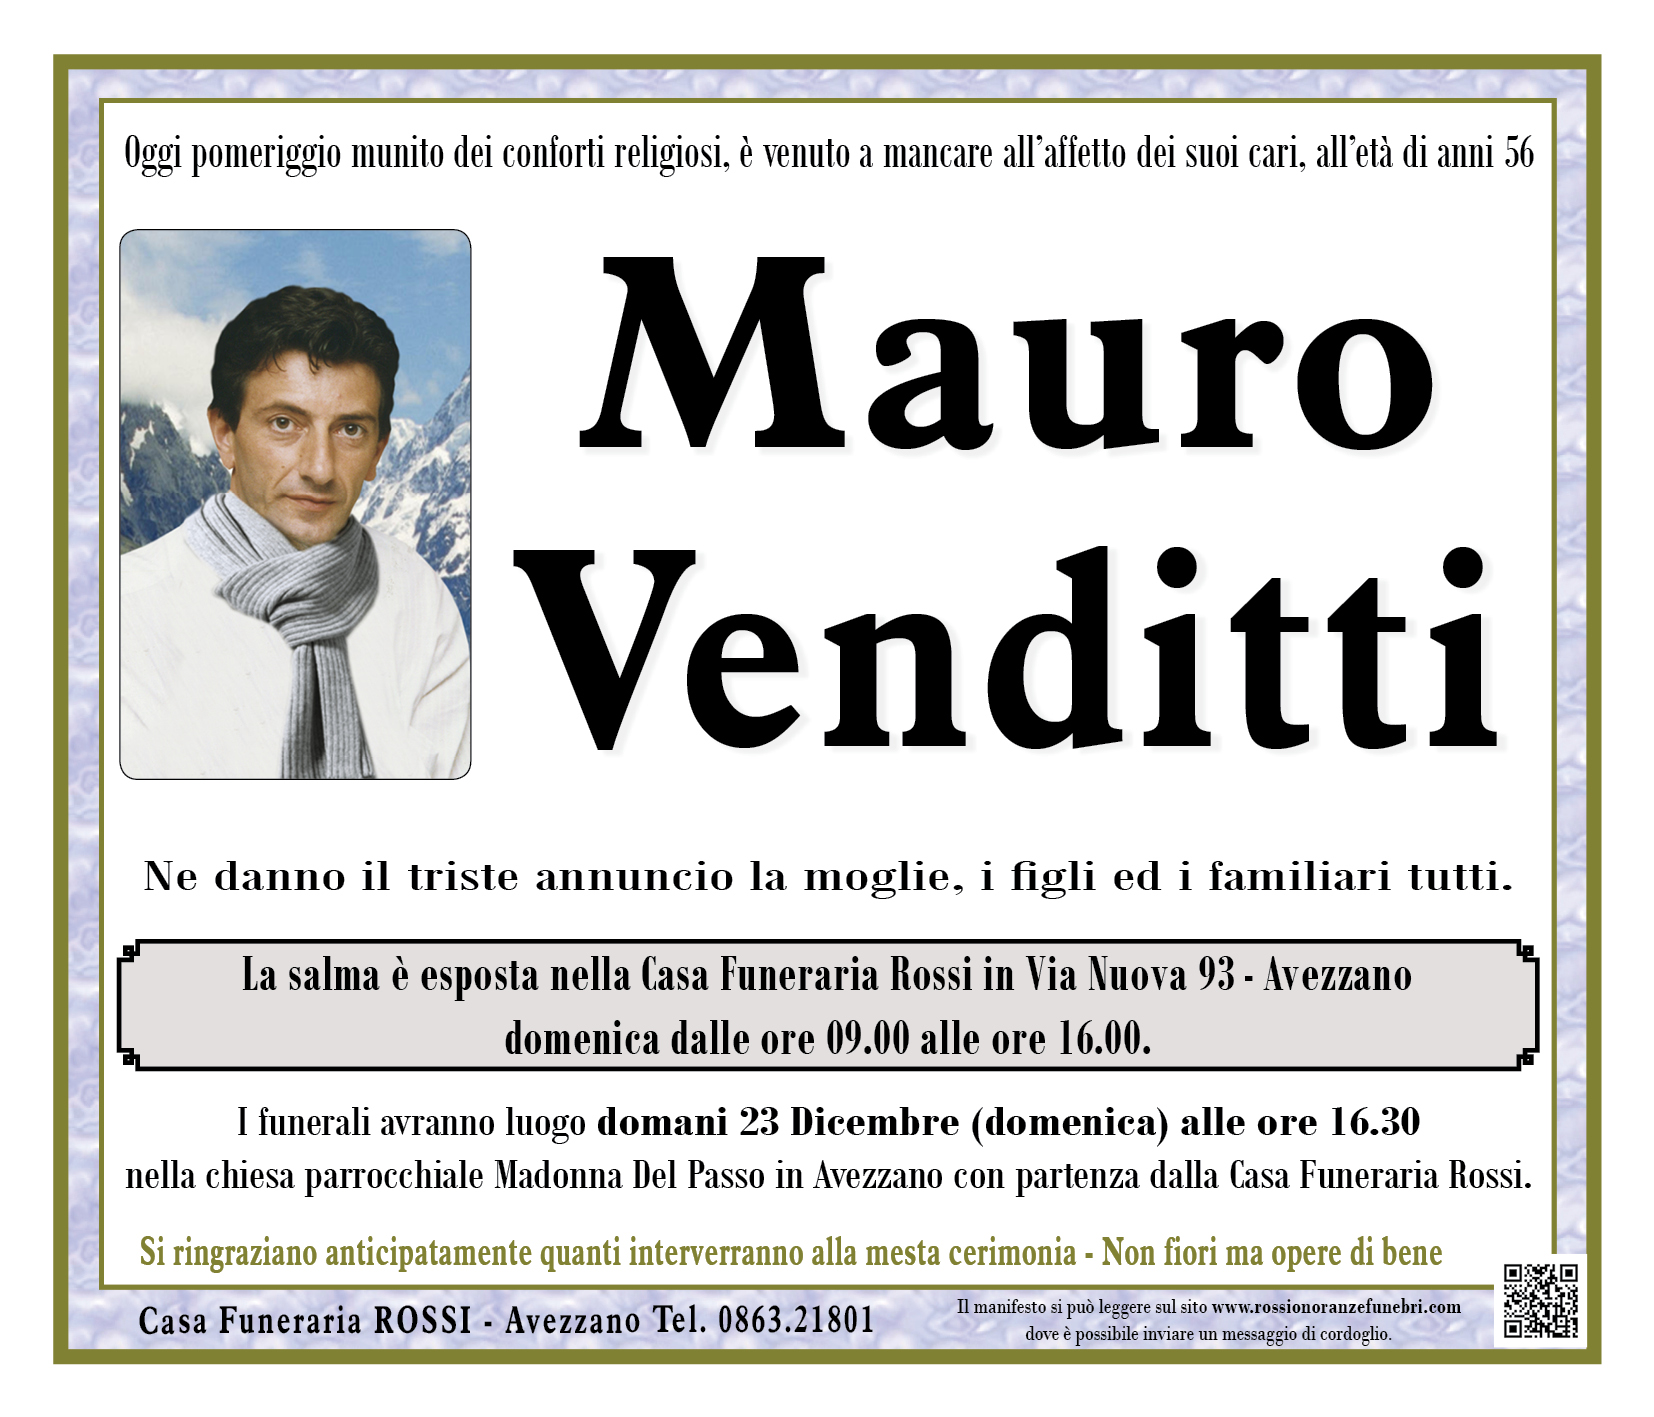 Mauro Venditti